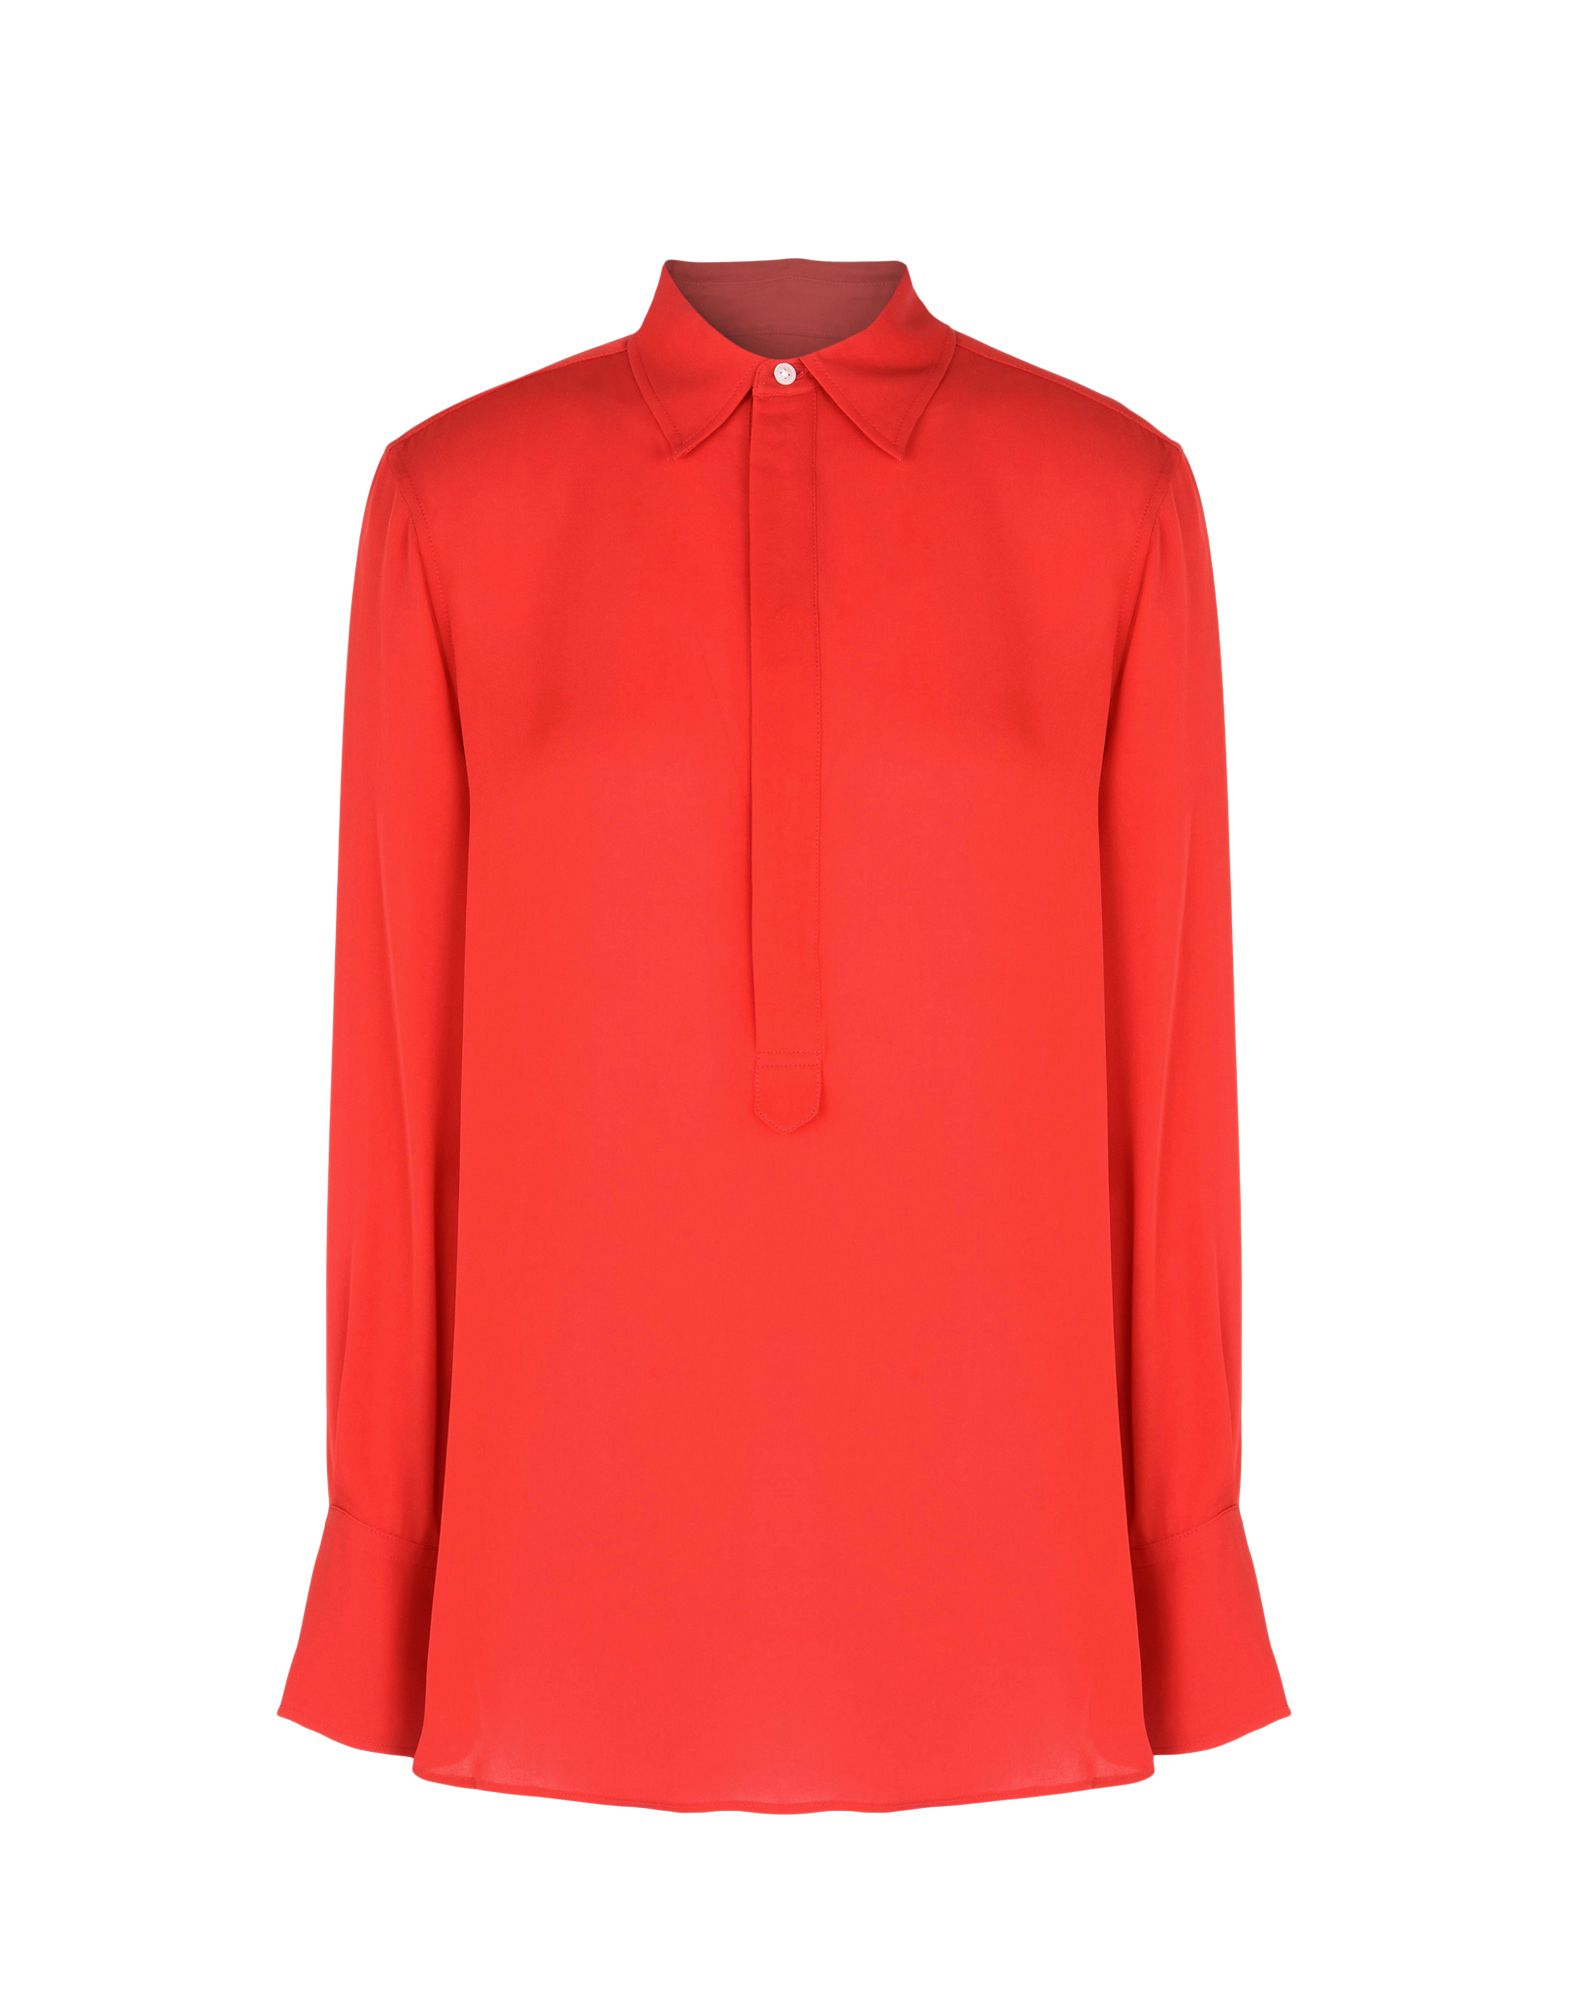 《送料無料》POLO RALPH LAUREN レディース ブラウス レッド XS シルク 100% Silk Georgette Shirt